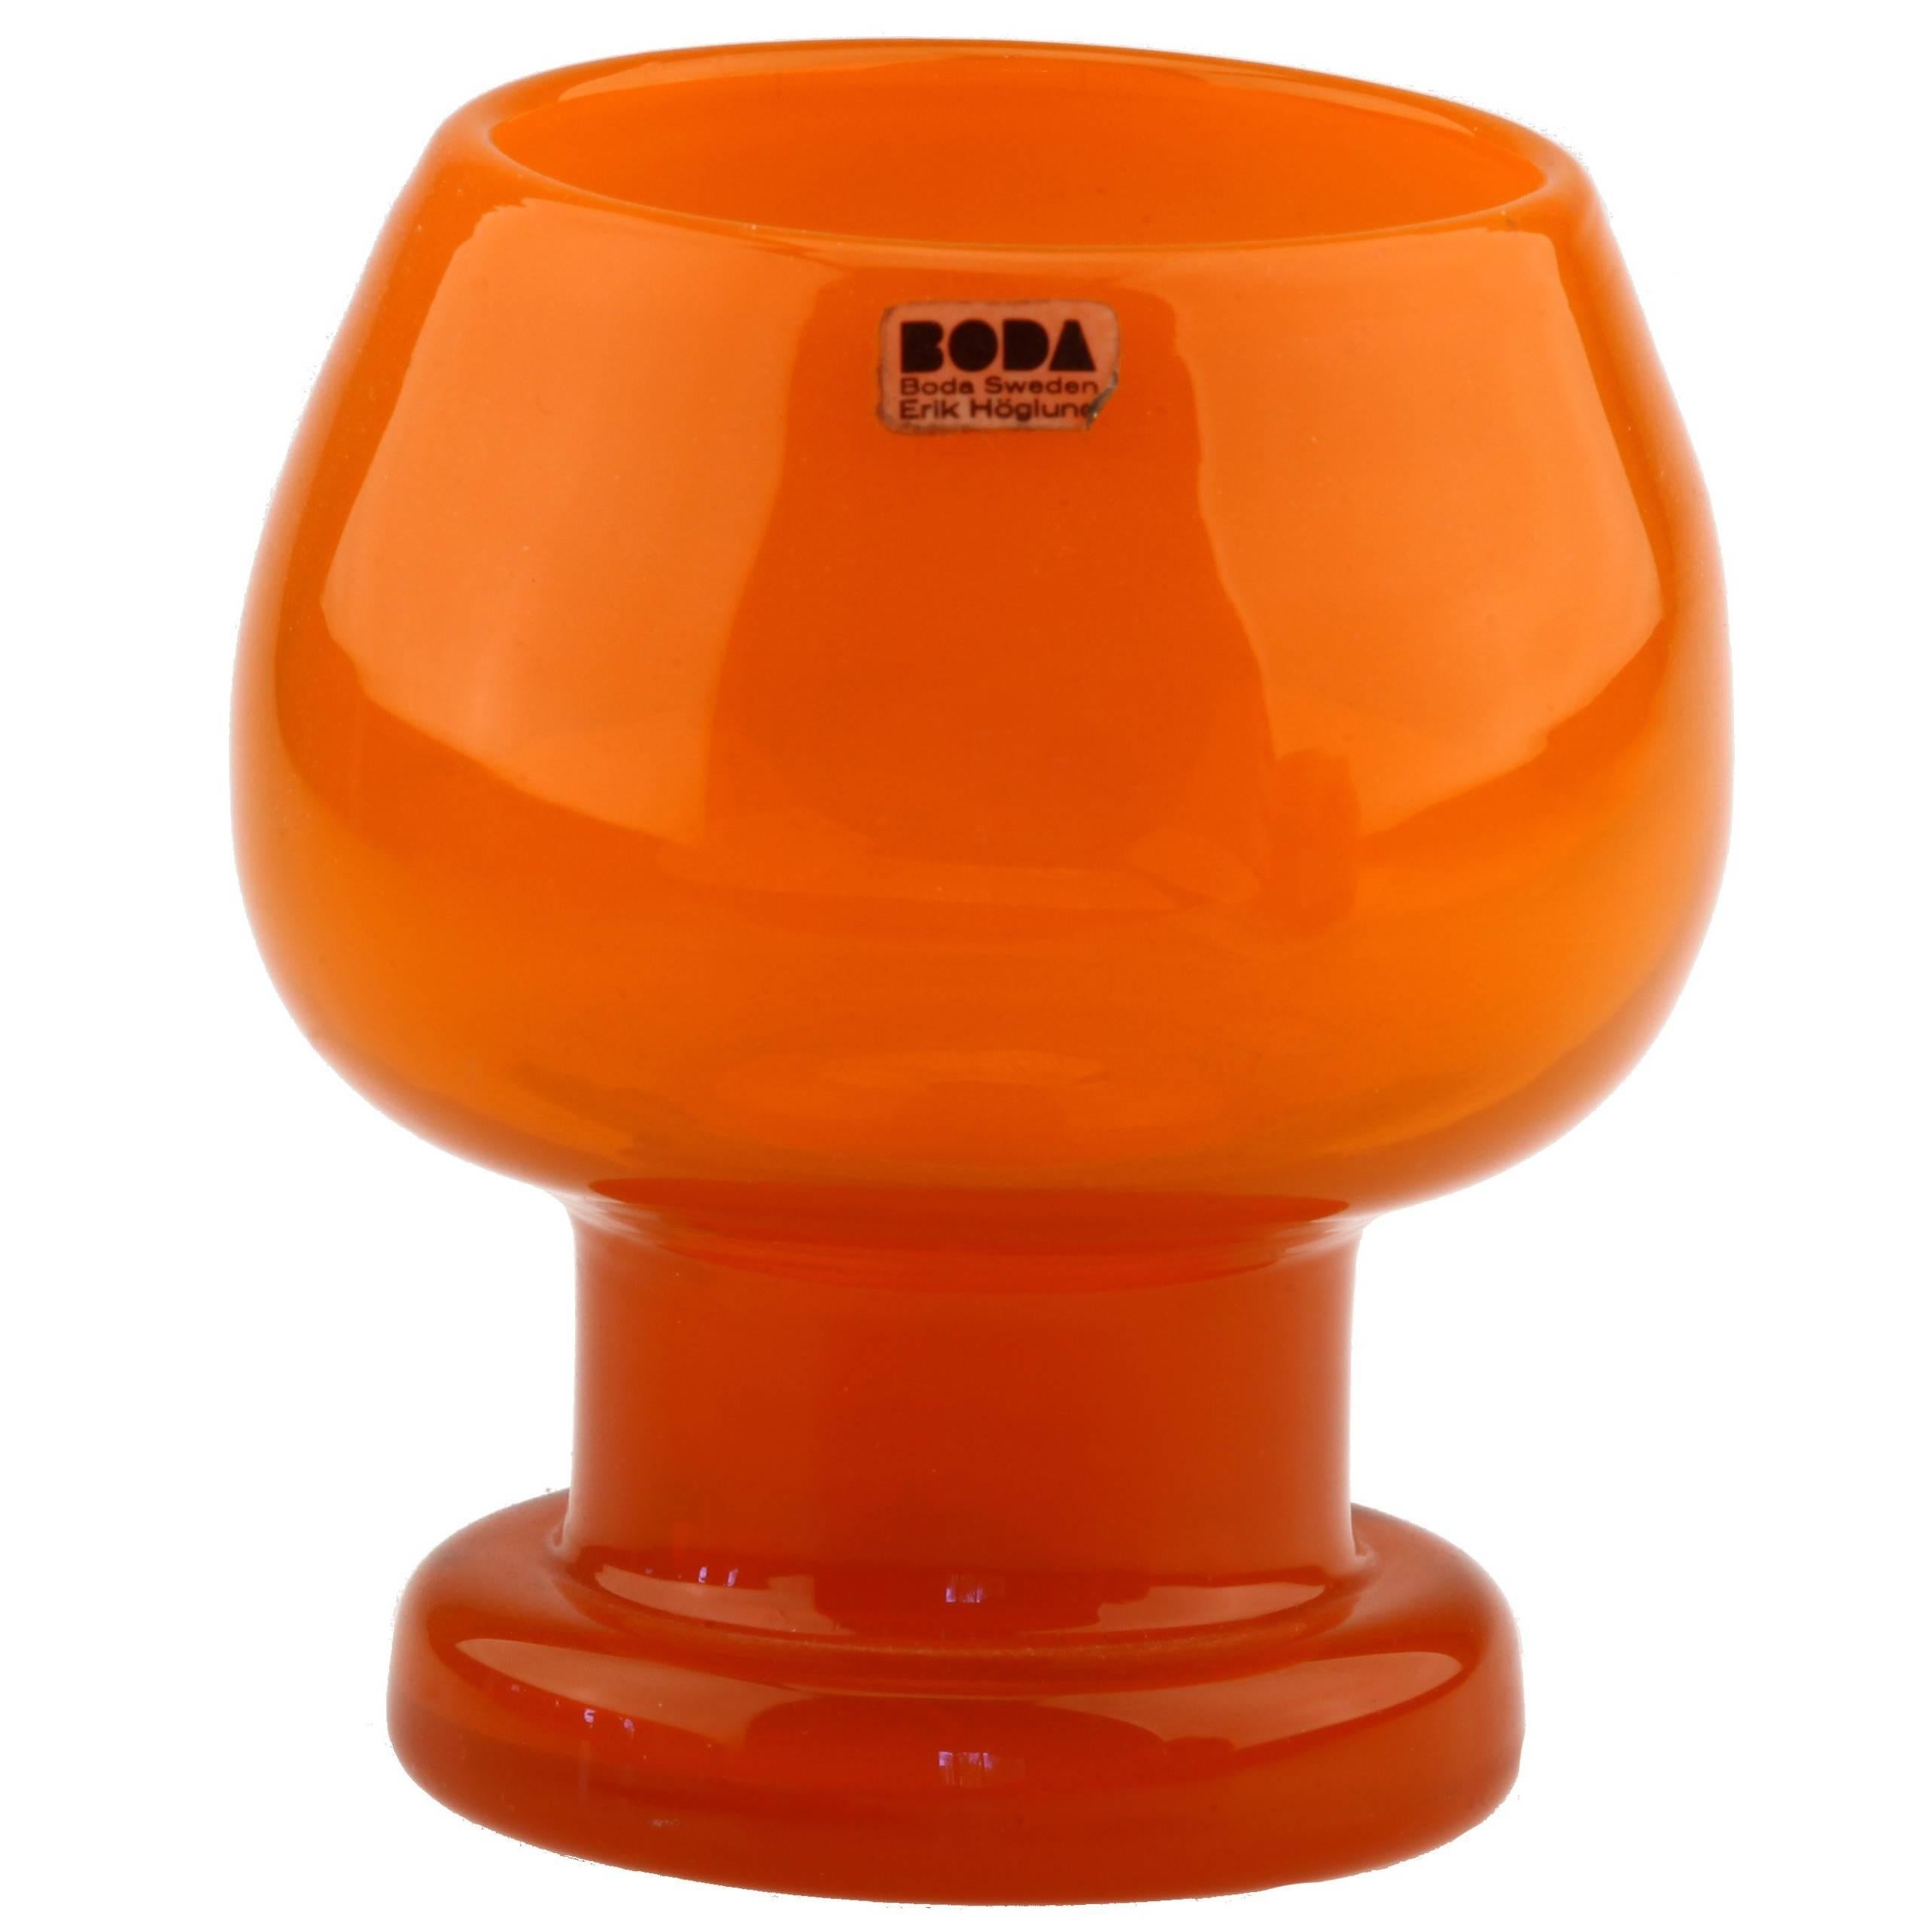 Erik Höglund Boda Sweden Signed H 1682/100 Orange Studio Work Glass Vase For Sale